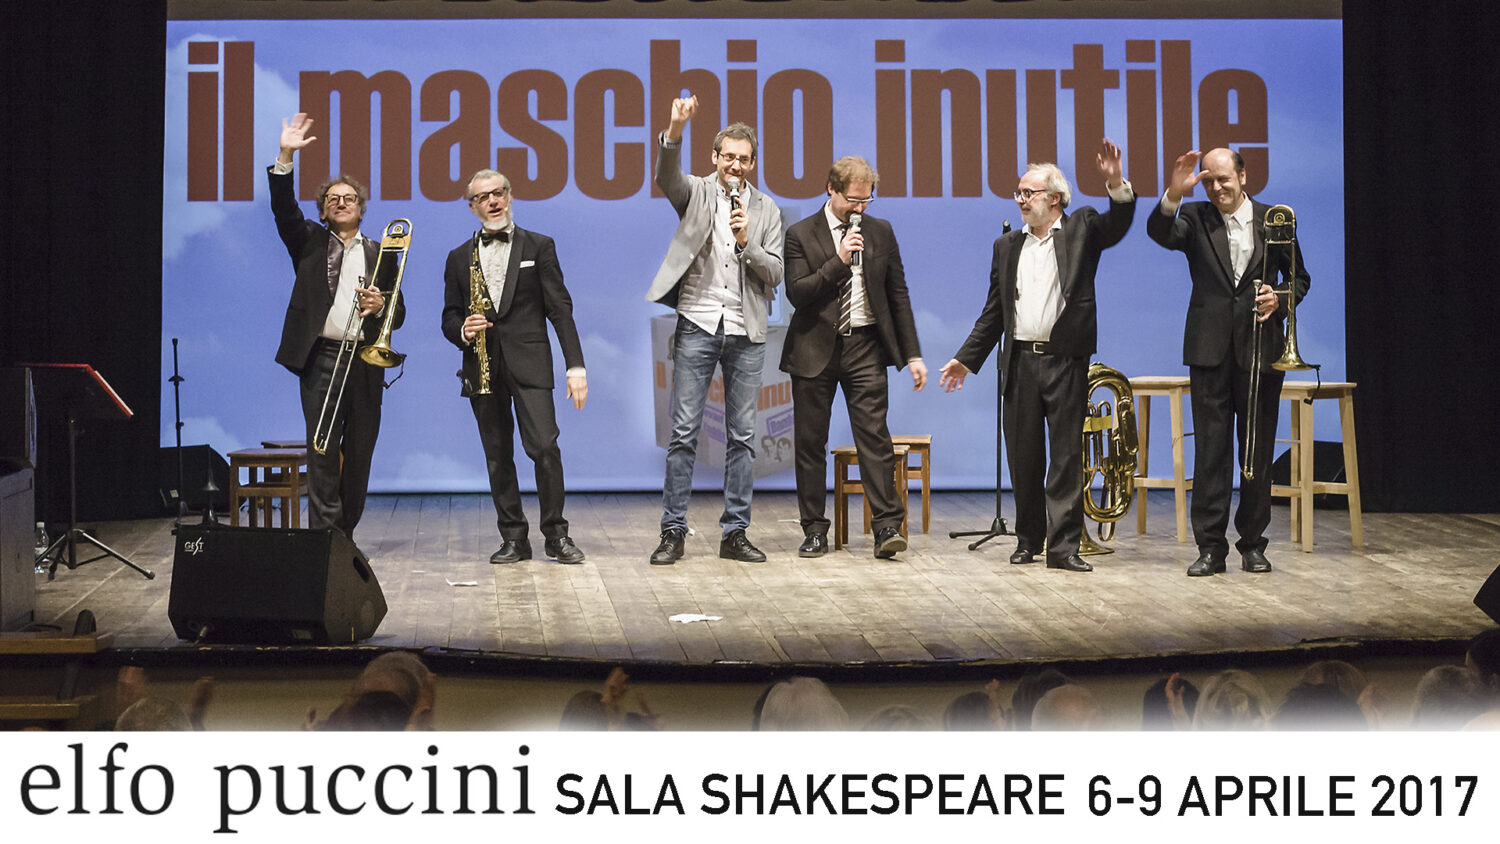 MaschioInutile Milano2017